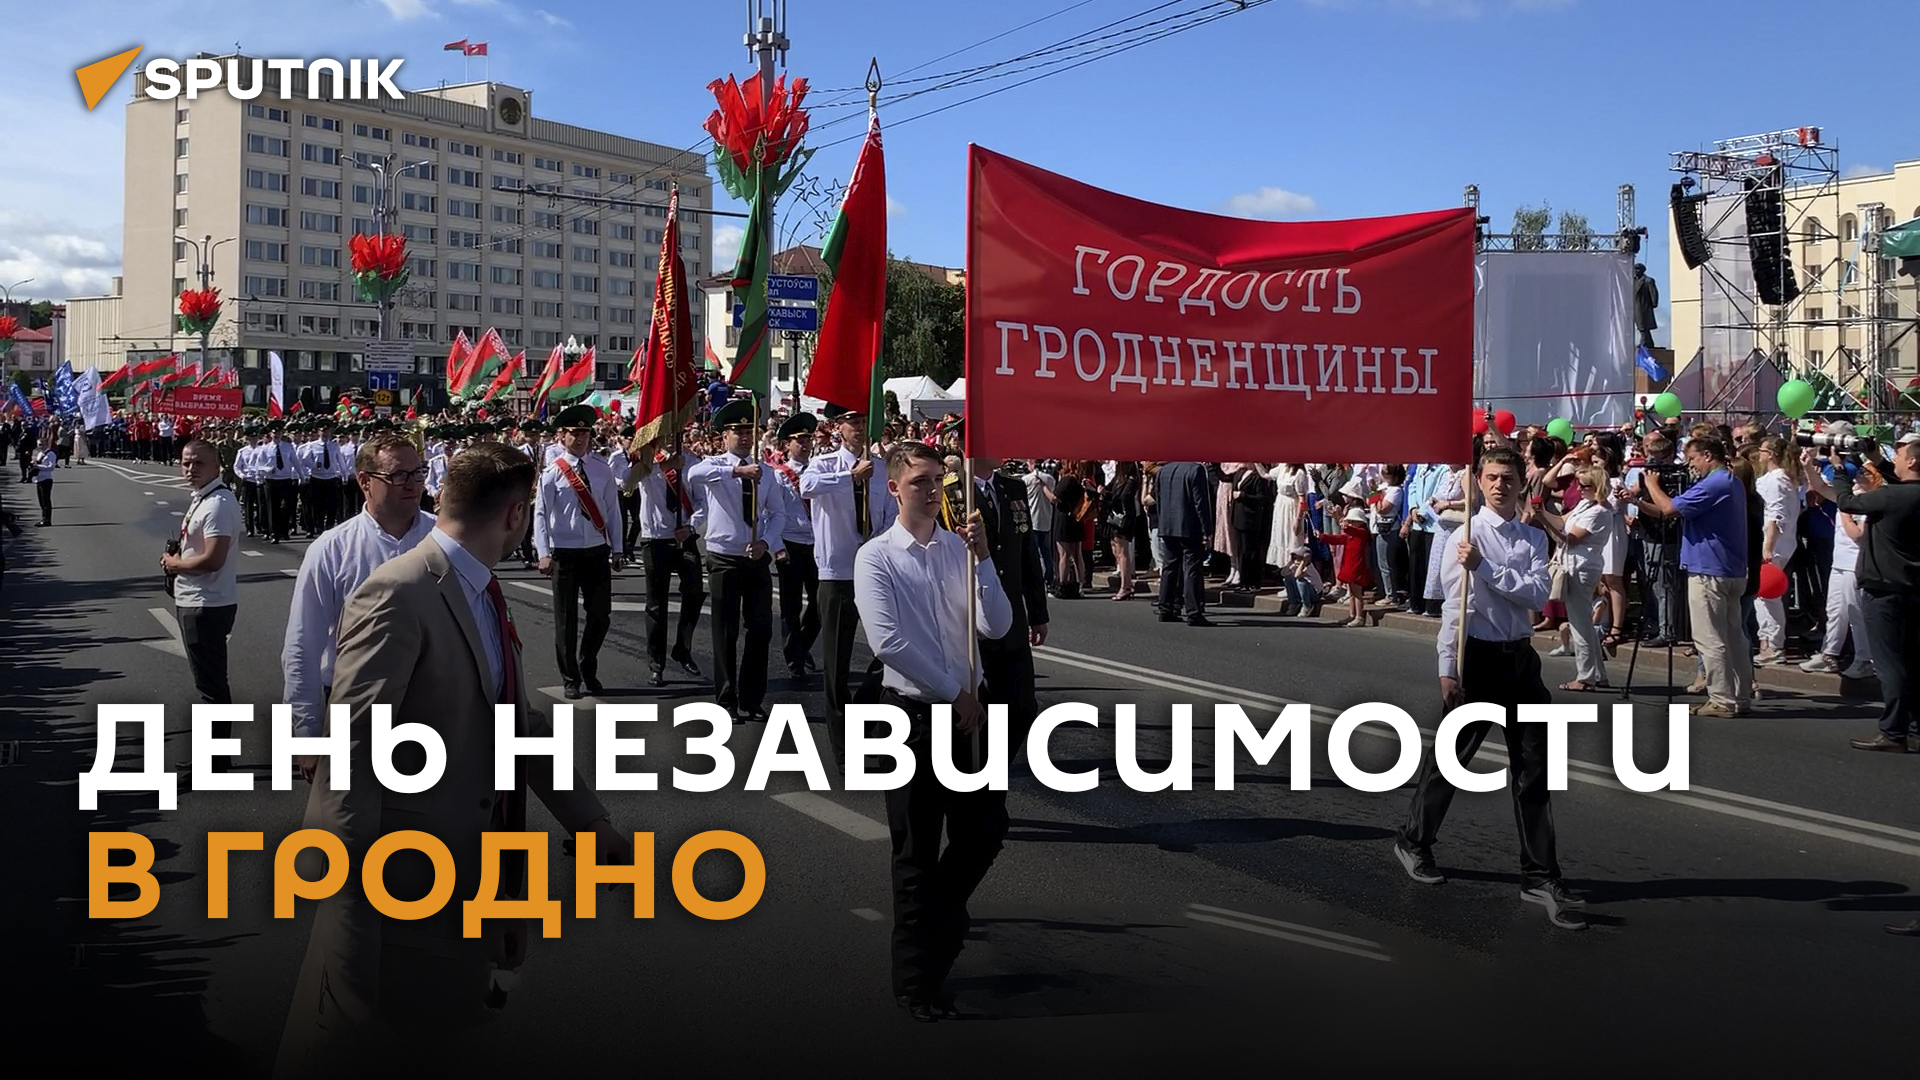 Автопарад, гулянья и концерт Николаева: День Независимости в Гродно